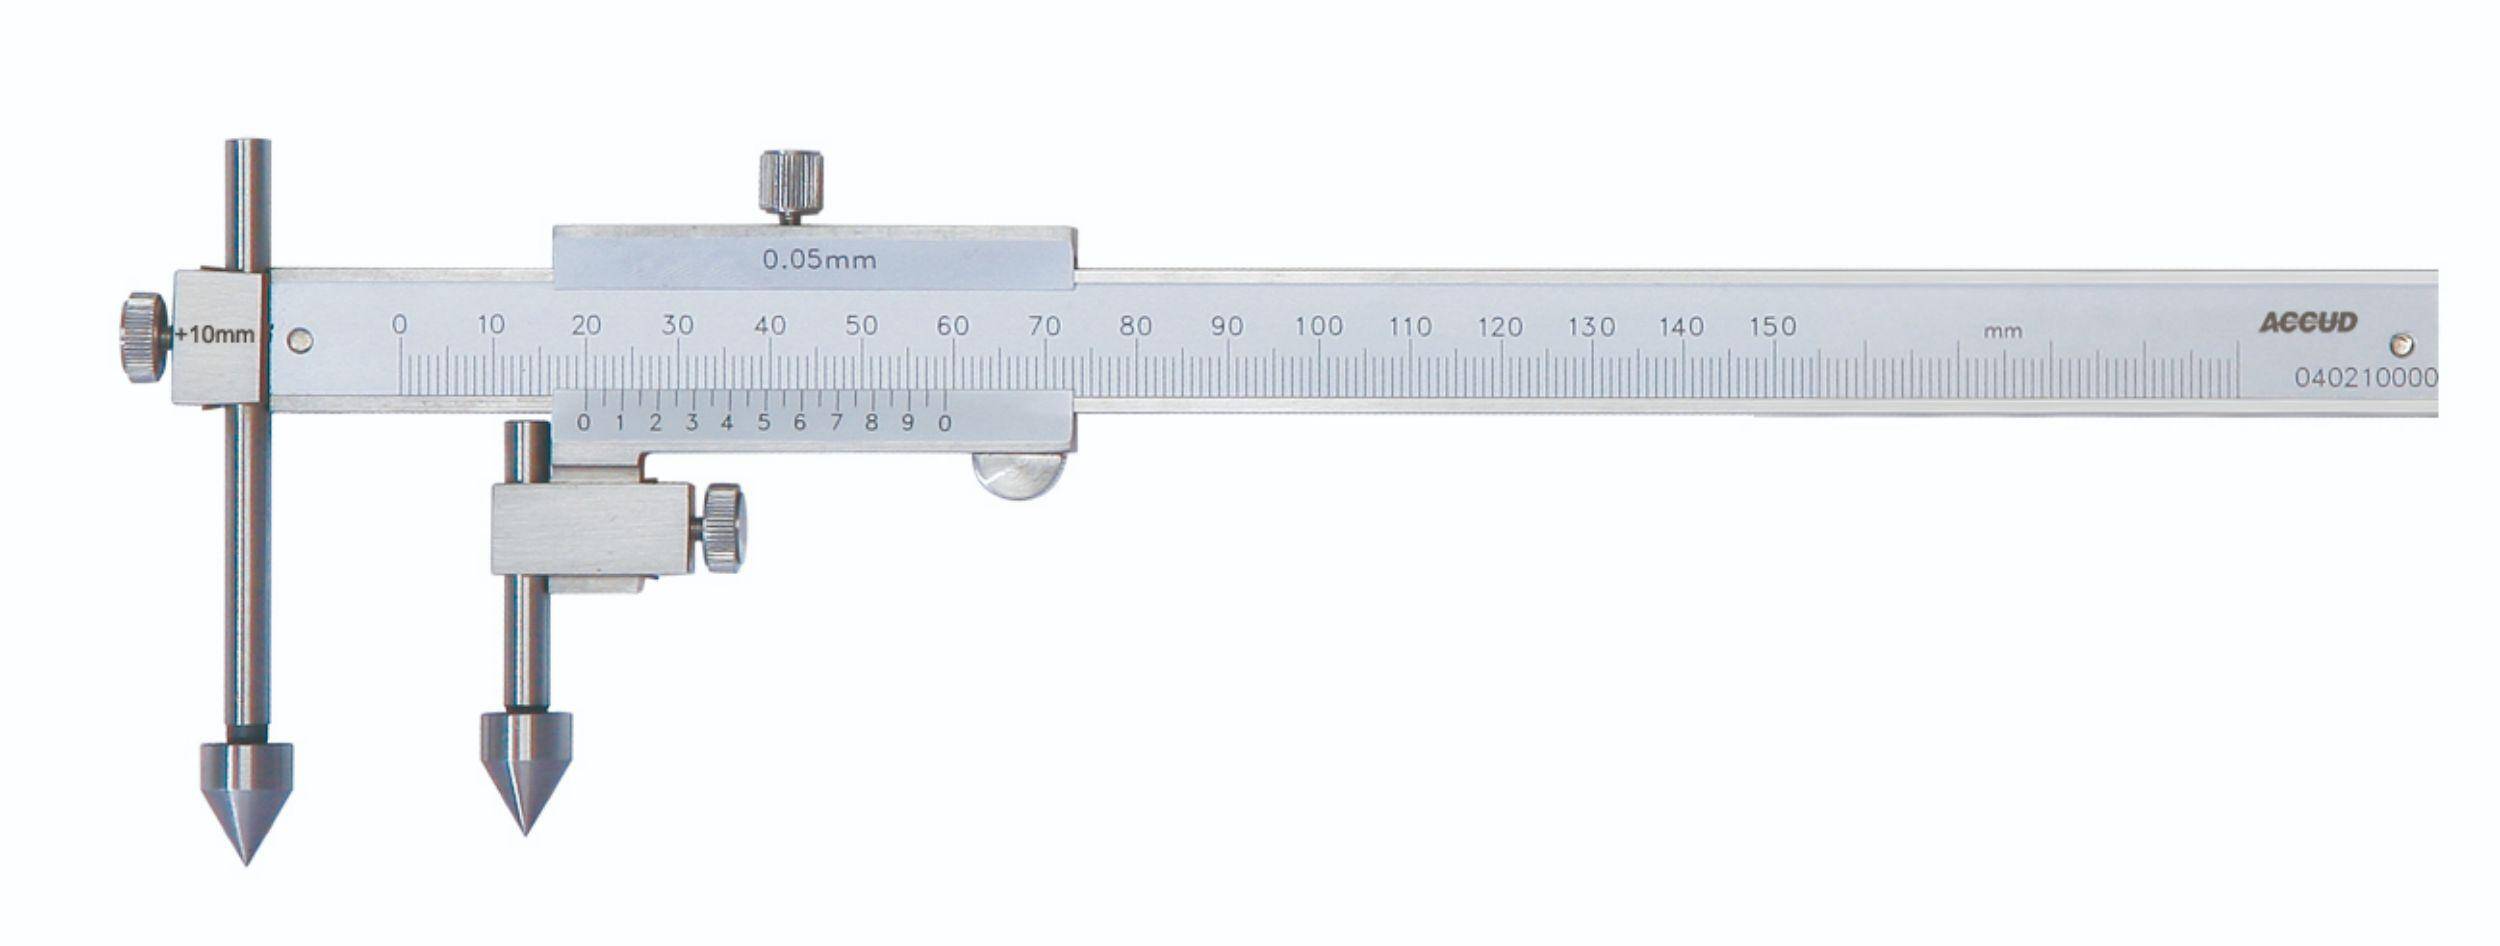 ACCUD suwmiarka analogowa 10-150/0,02 mm centrująca ze śrubą 161-006-11 (Zdjęcie 1)